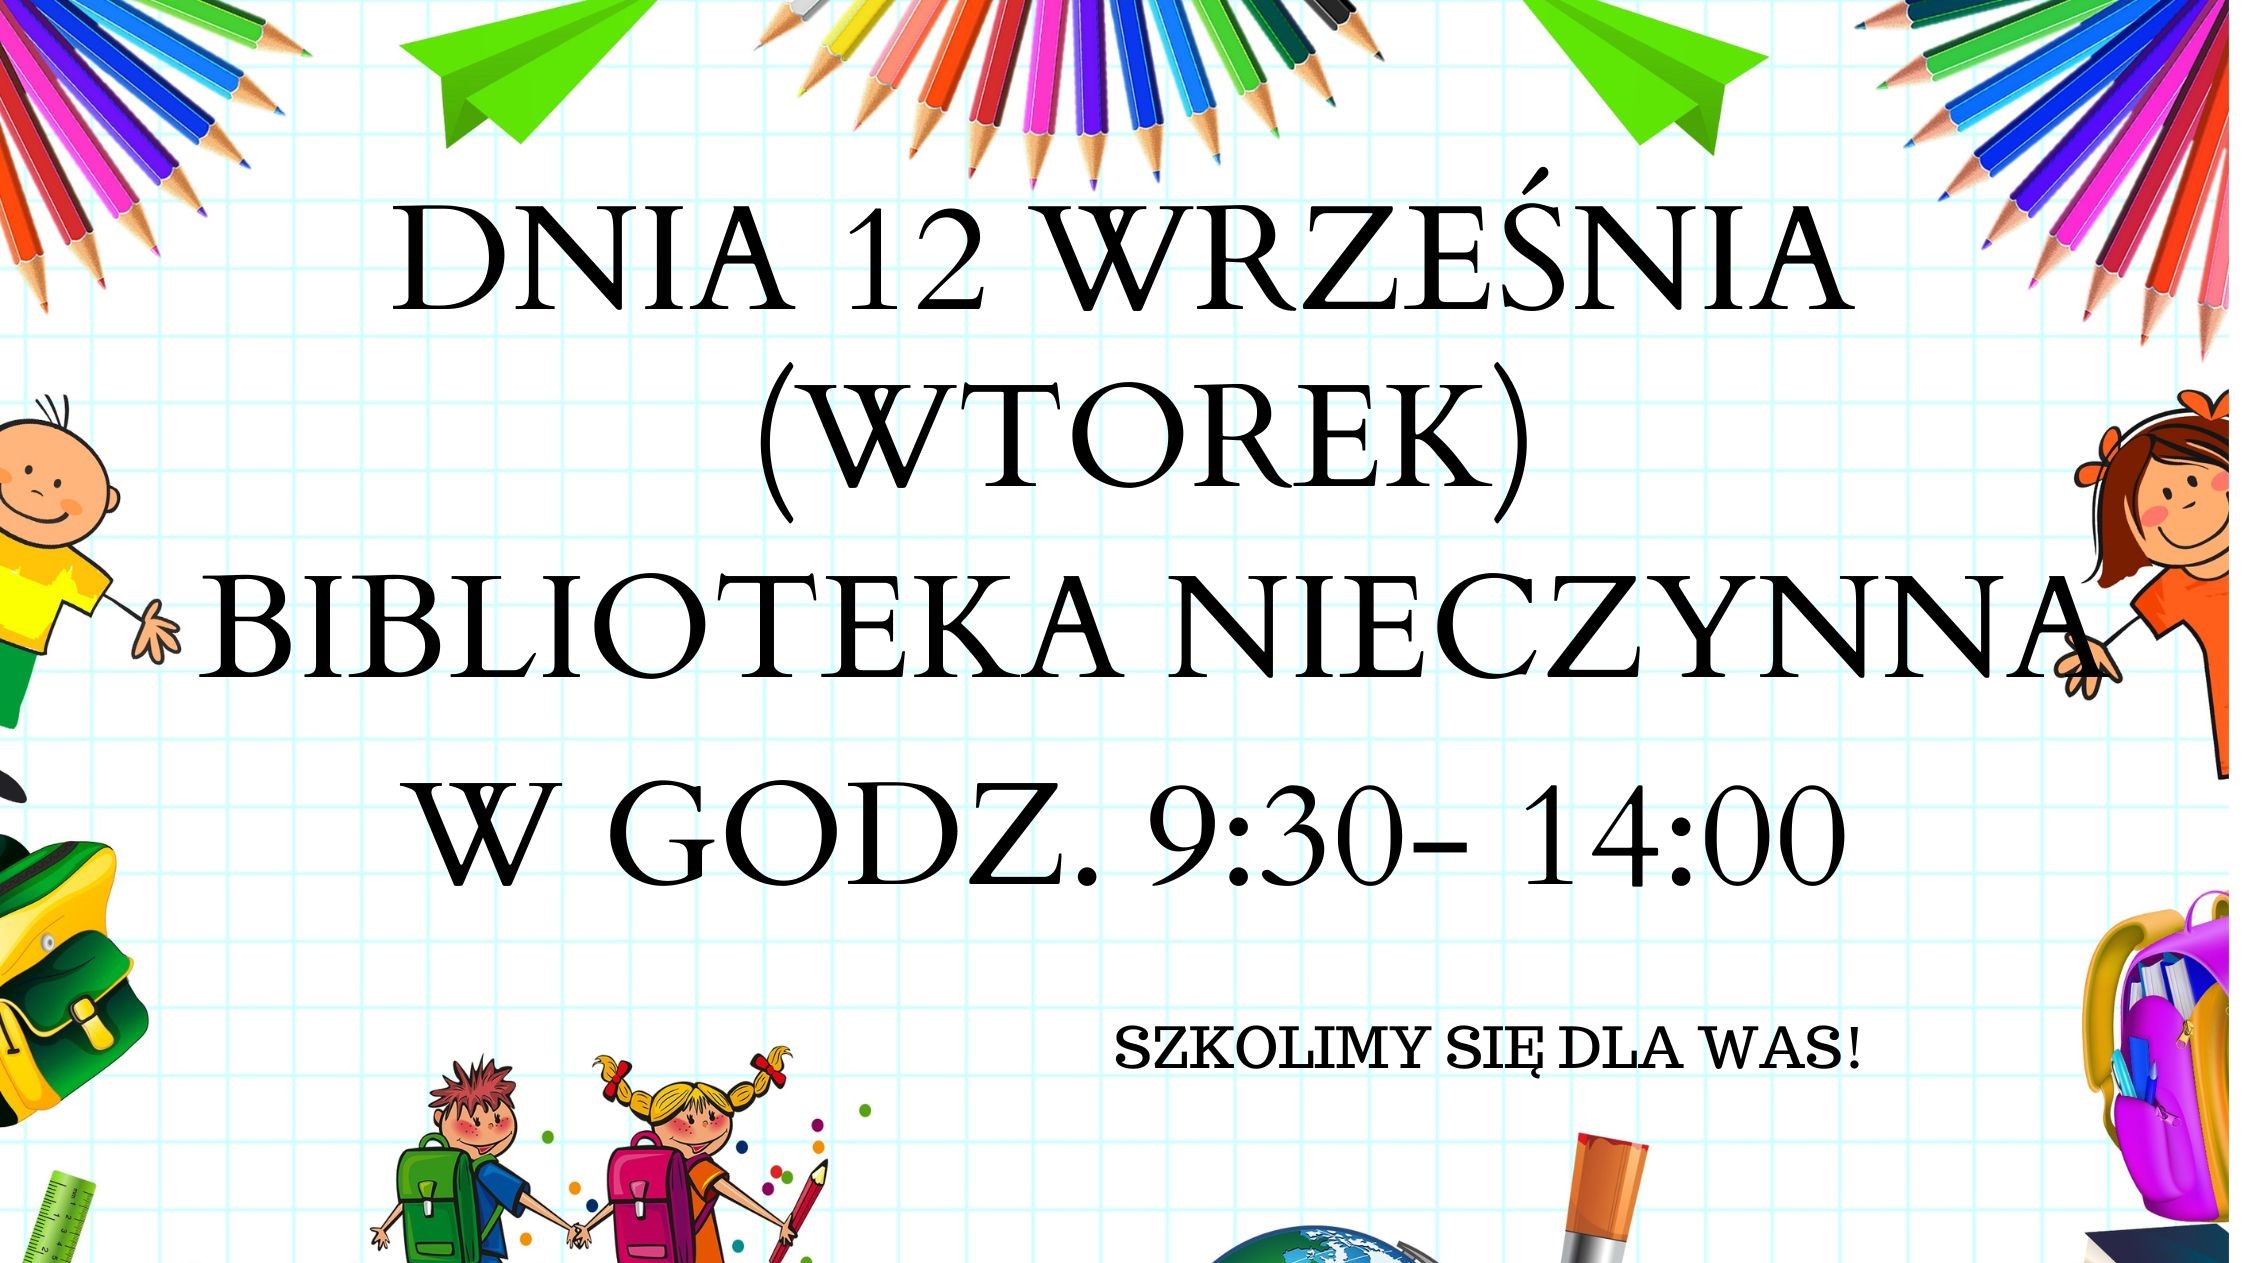 informacja na plakacie iż biblioteka nieczynna od 9:30 do 14:00 12 września